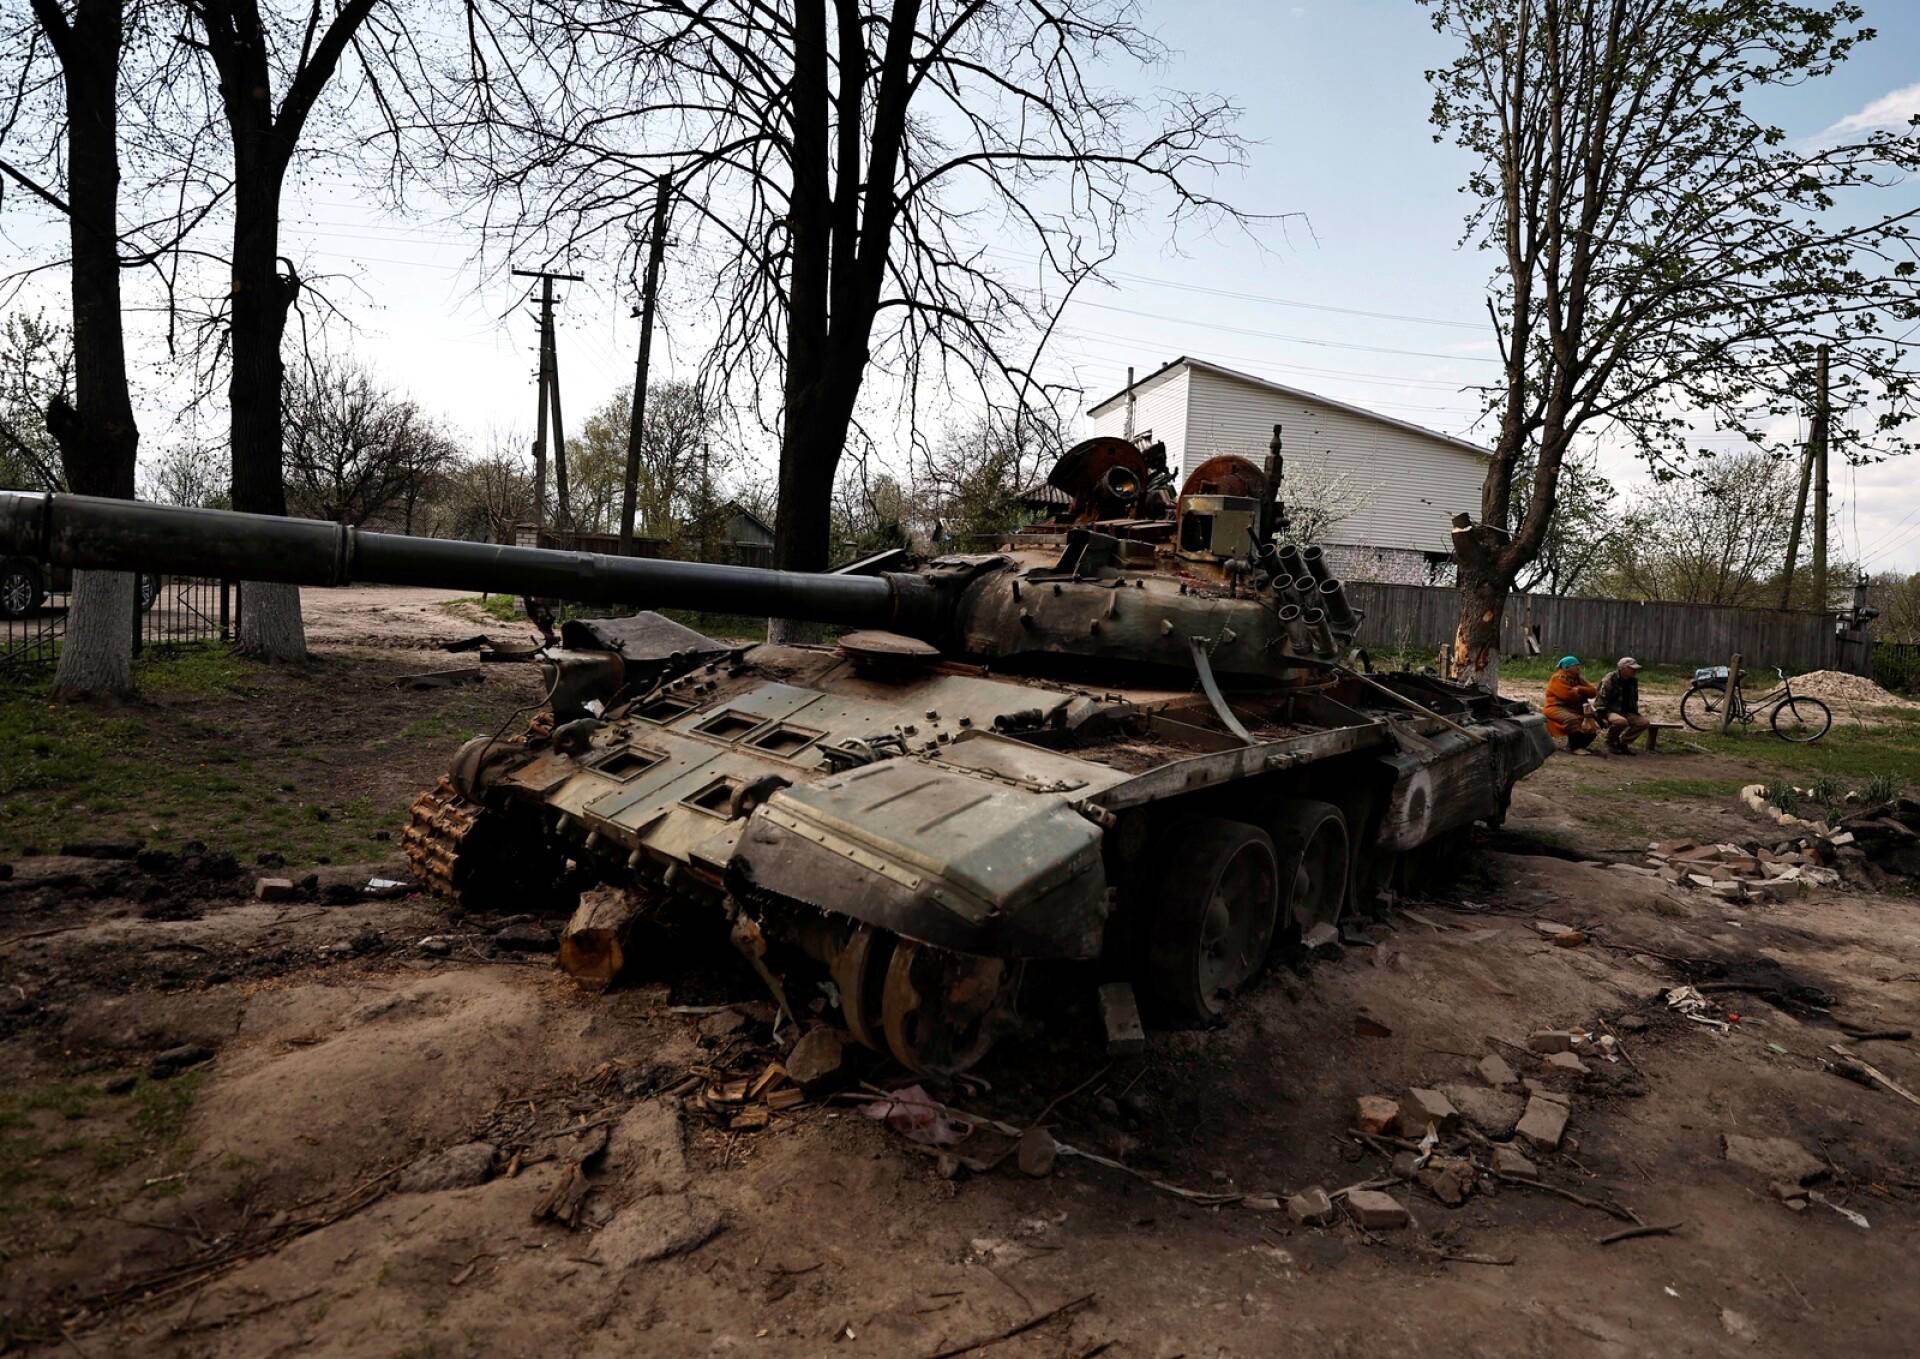 Ulyana Pishchur, 72, istuu penkillä tuhotun venäläisen tankin takana Slobodassa Tshernihivin alueella.